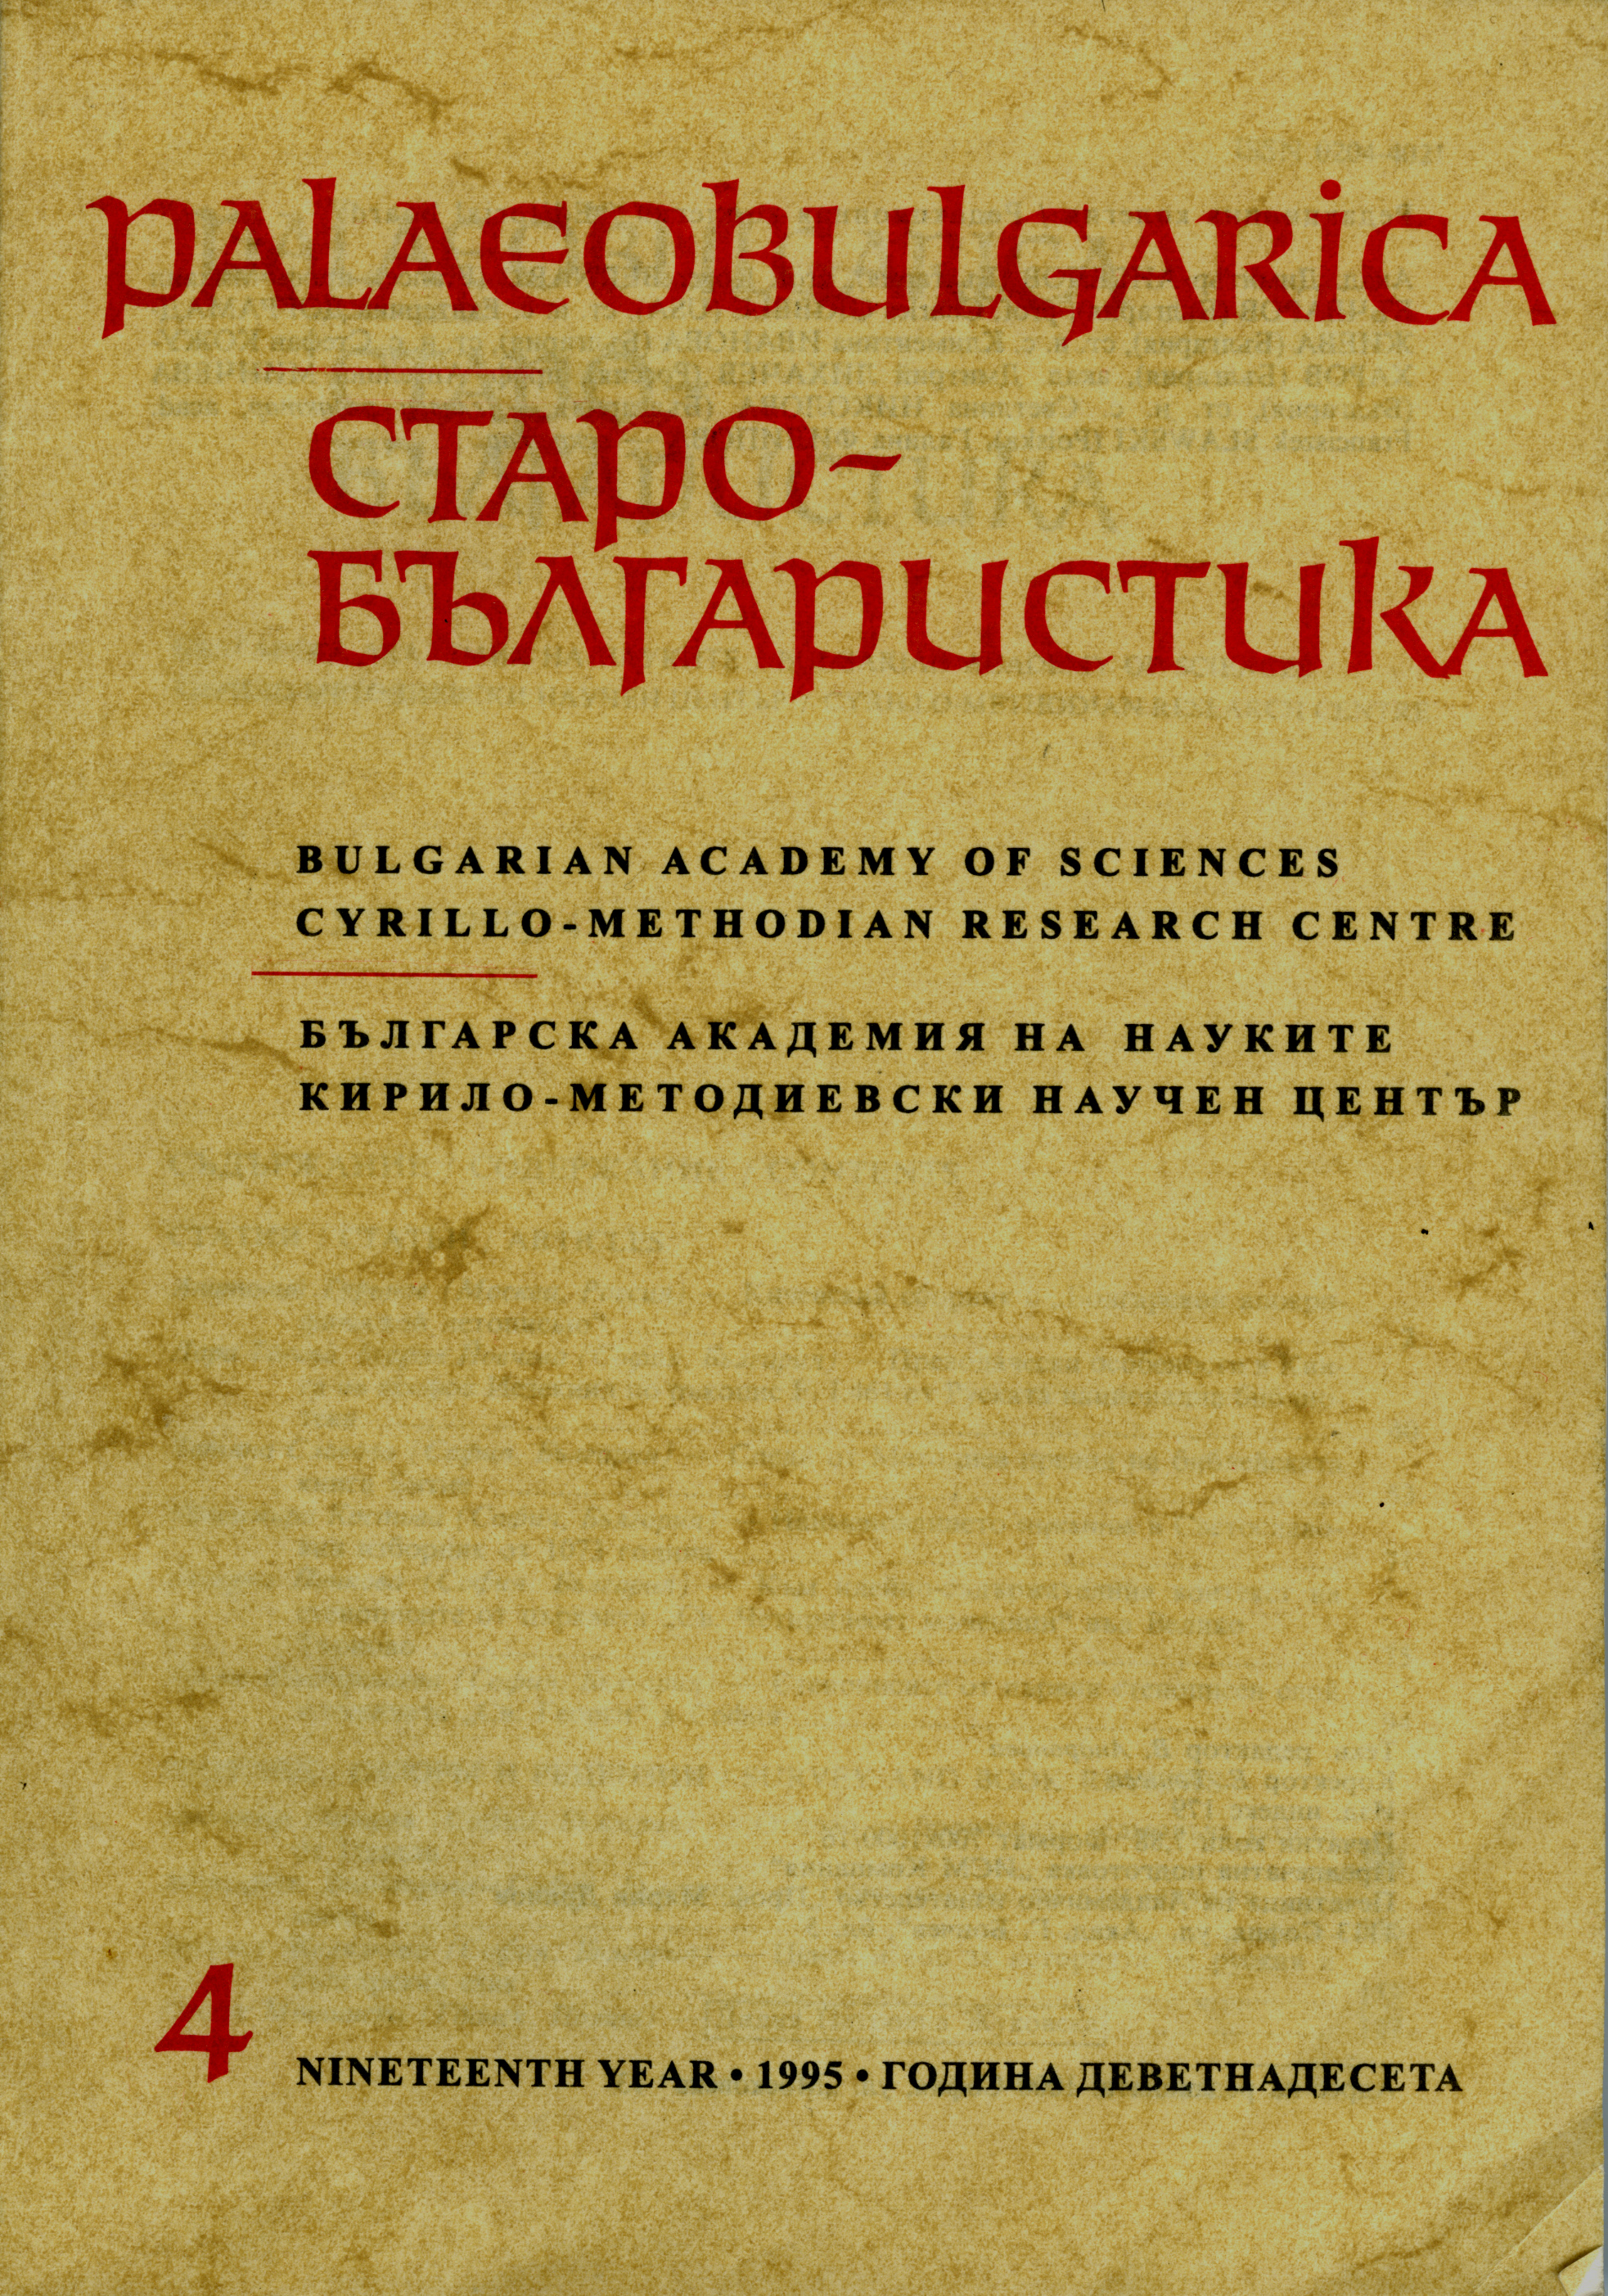 Ценен извор за историята на руския и българския език